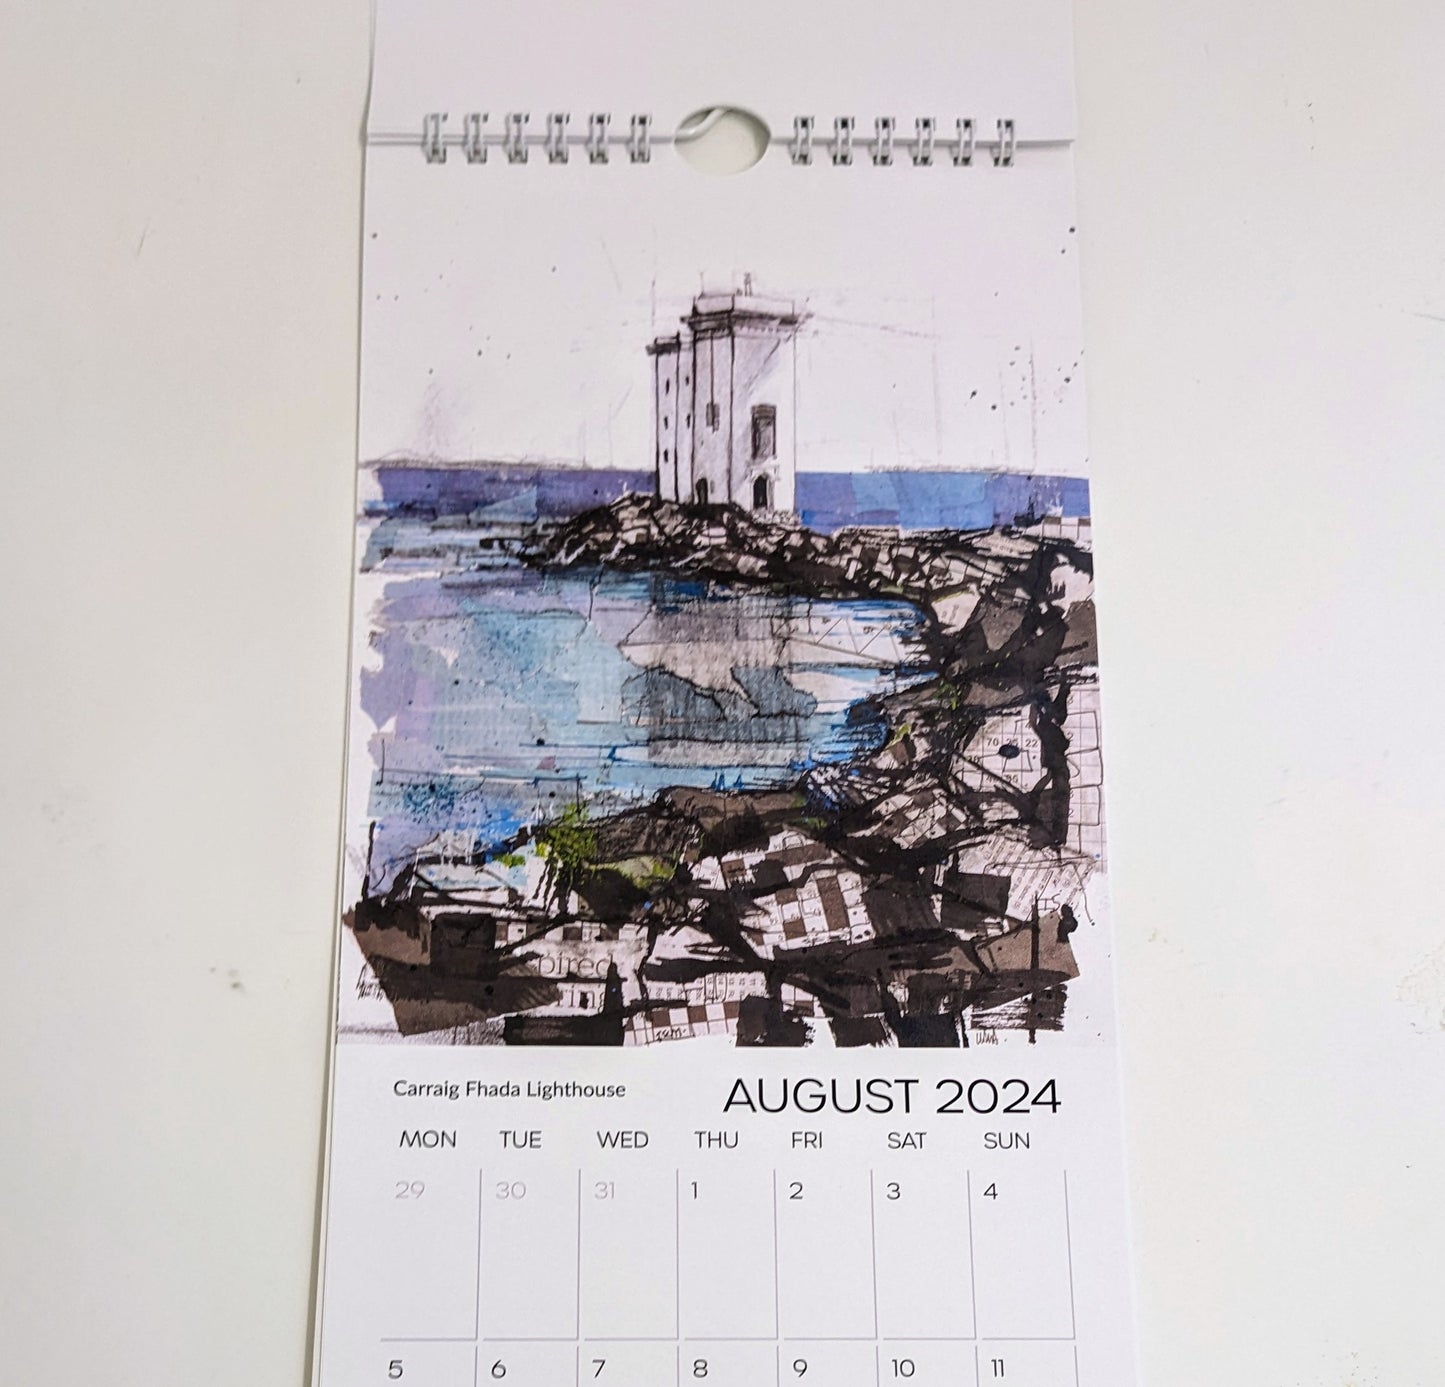 Lighthouses of Scotland 2024 Calendar